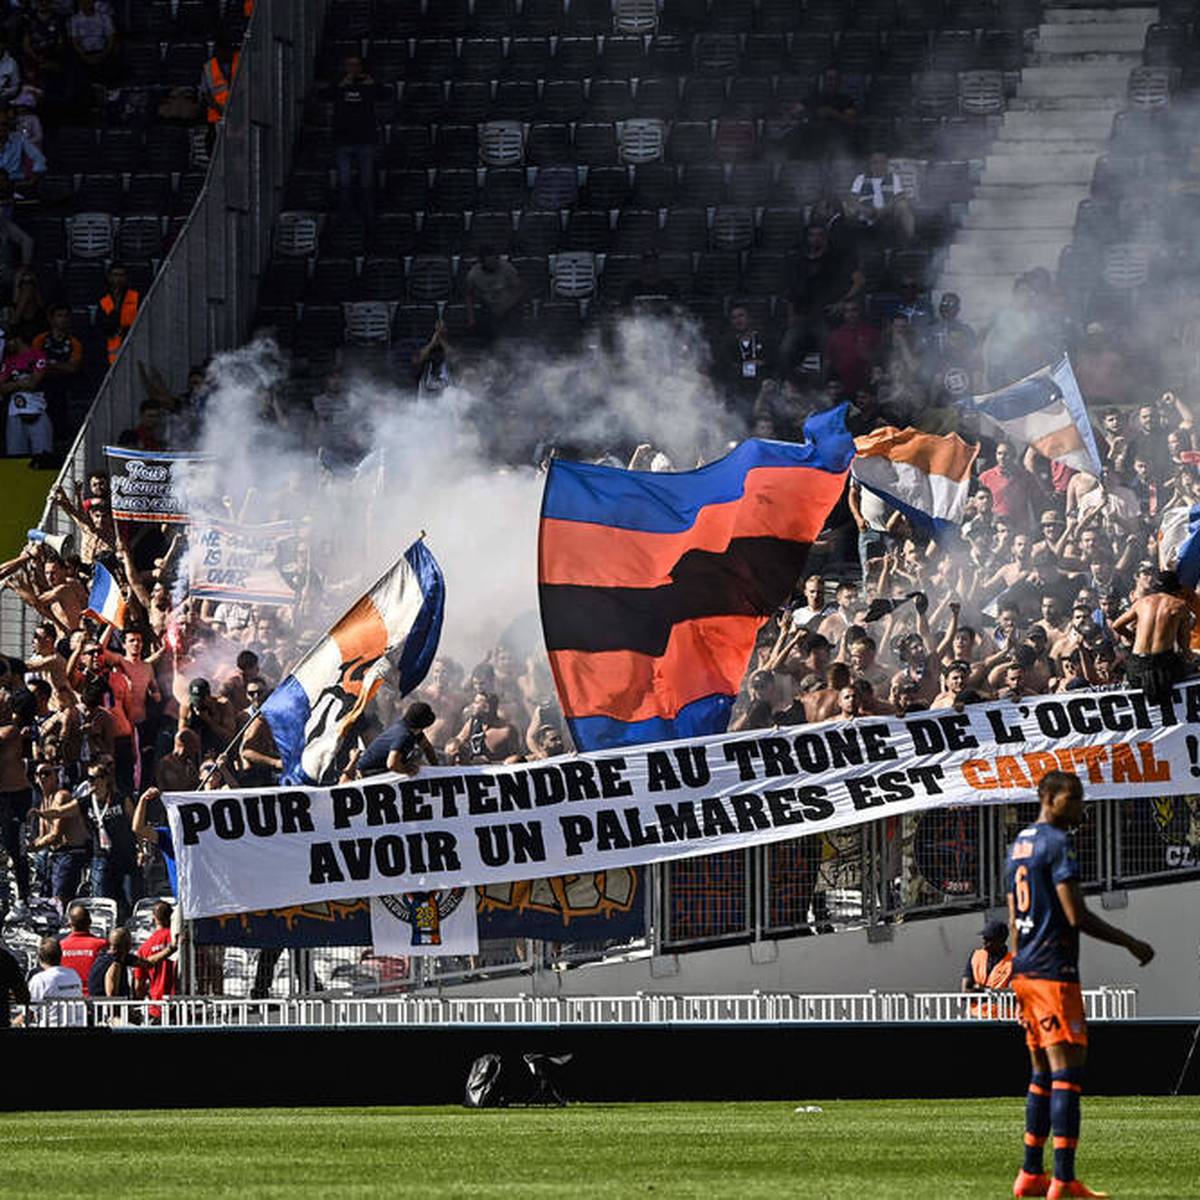 Ausschreitungen überschatten das Duell zwischen dem FC Toulouse und HSC Montpellier. Tränengas, Pyro und Festnahmen stehen im Brennpunkt.